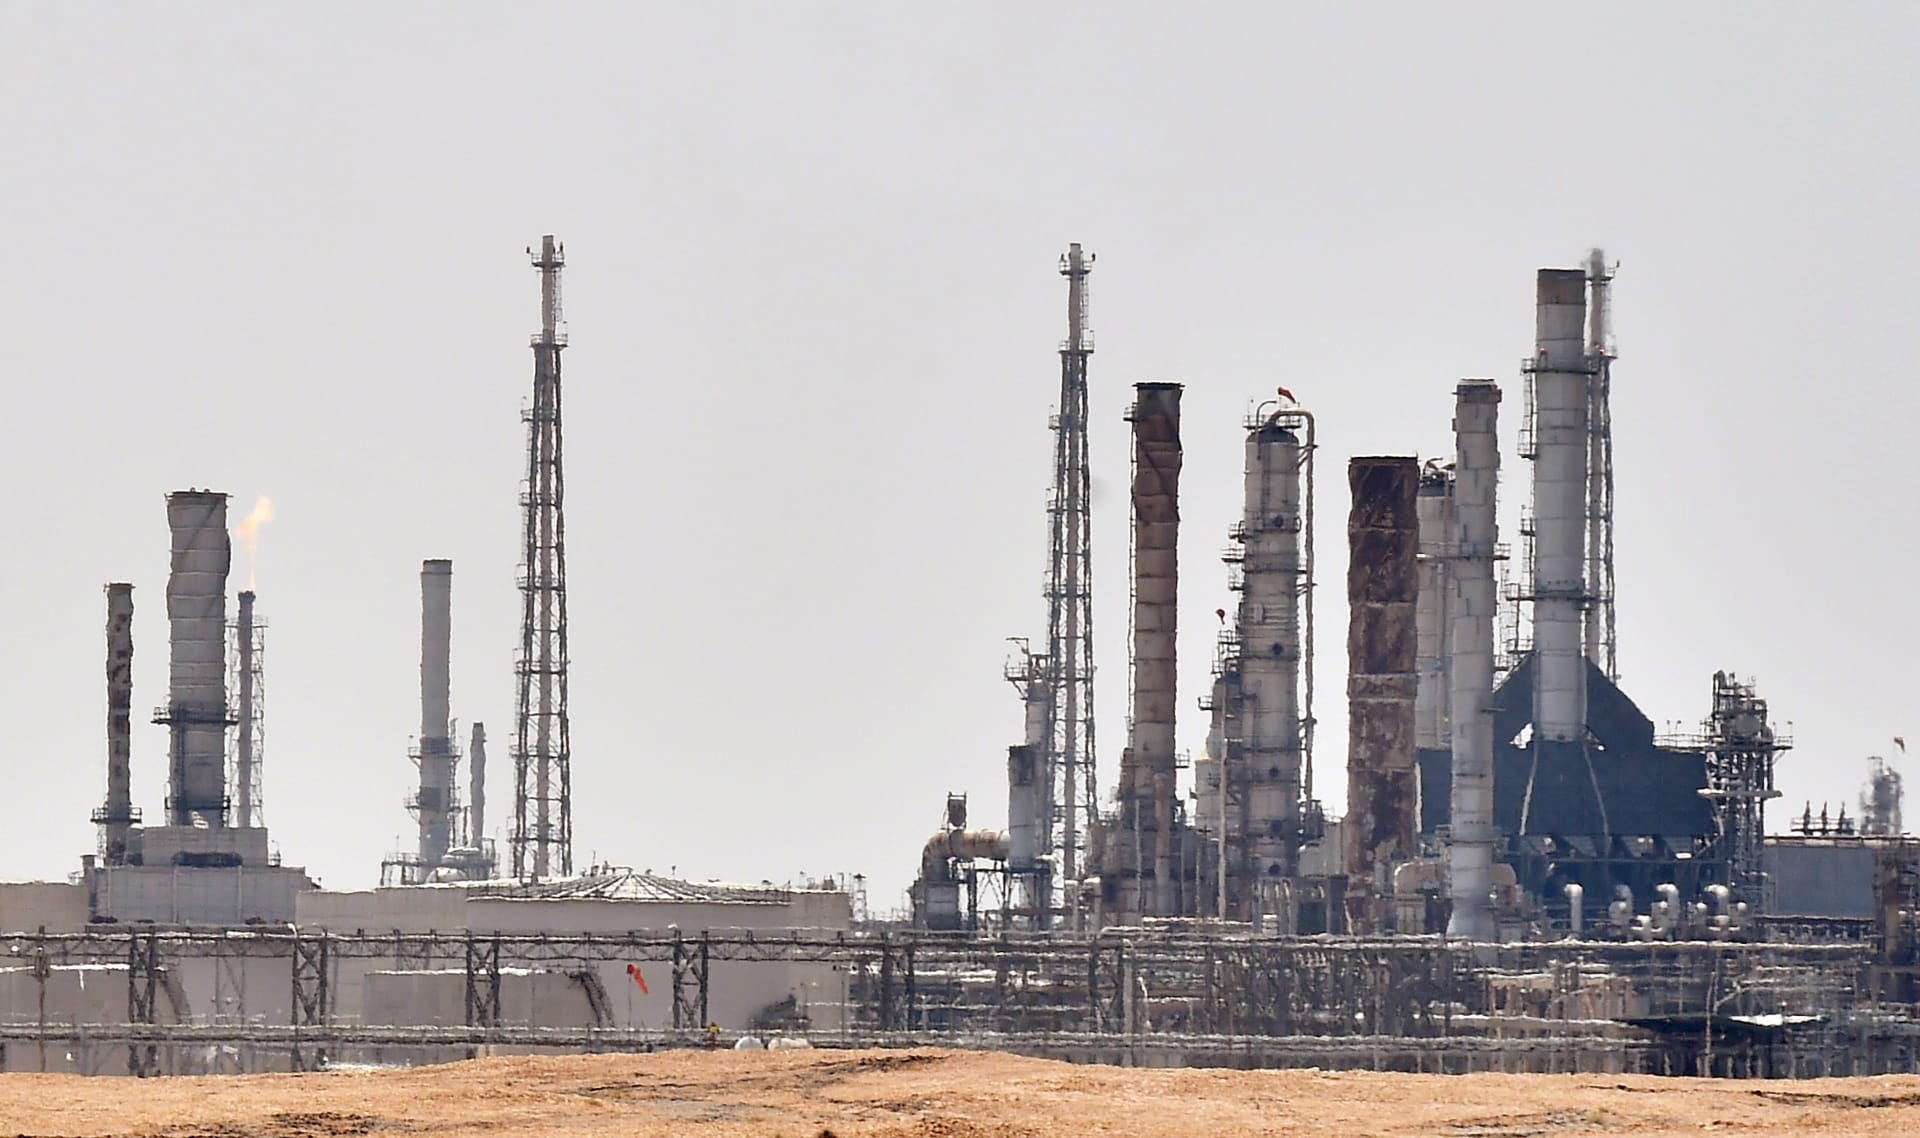 استعادة مستويات إنتاج النفط في السعودية سيستغرق "أسابيع وليس أيام"